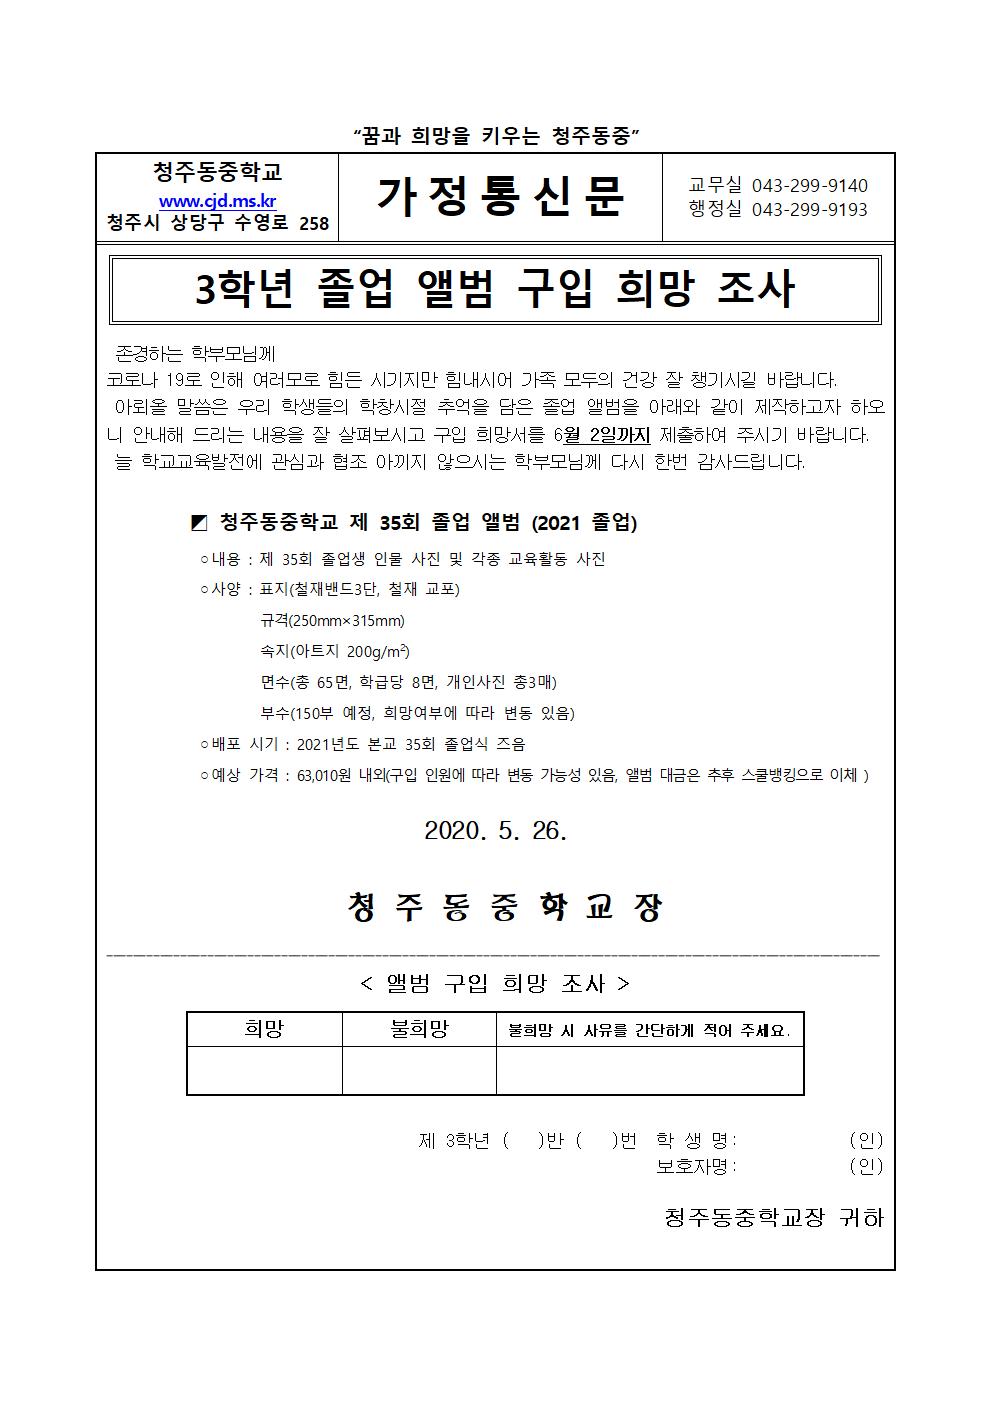 앨범구입희망조사1차(가정통신문)(1)001